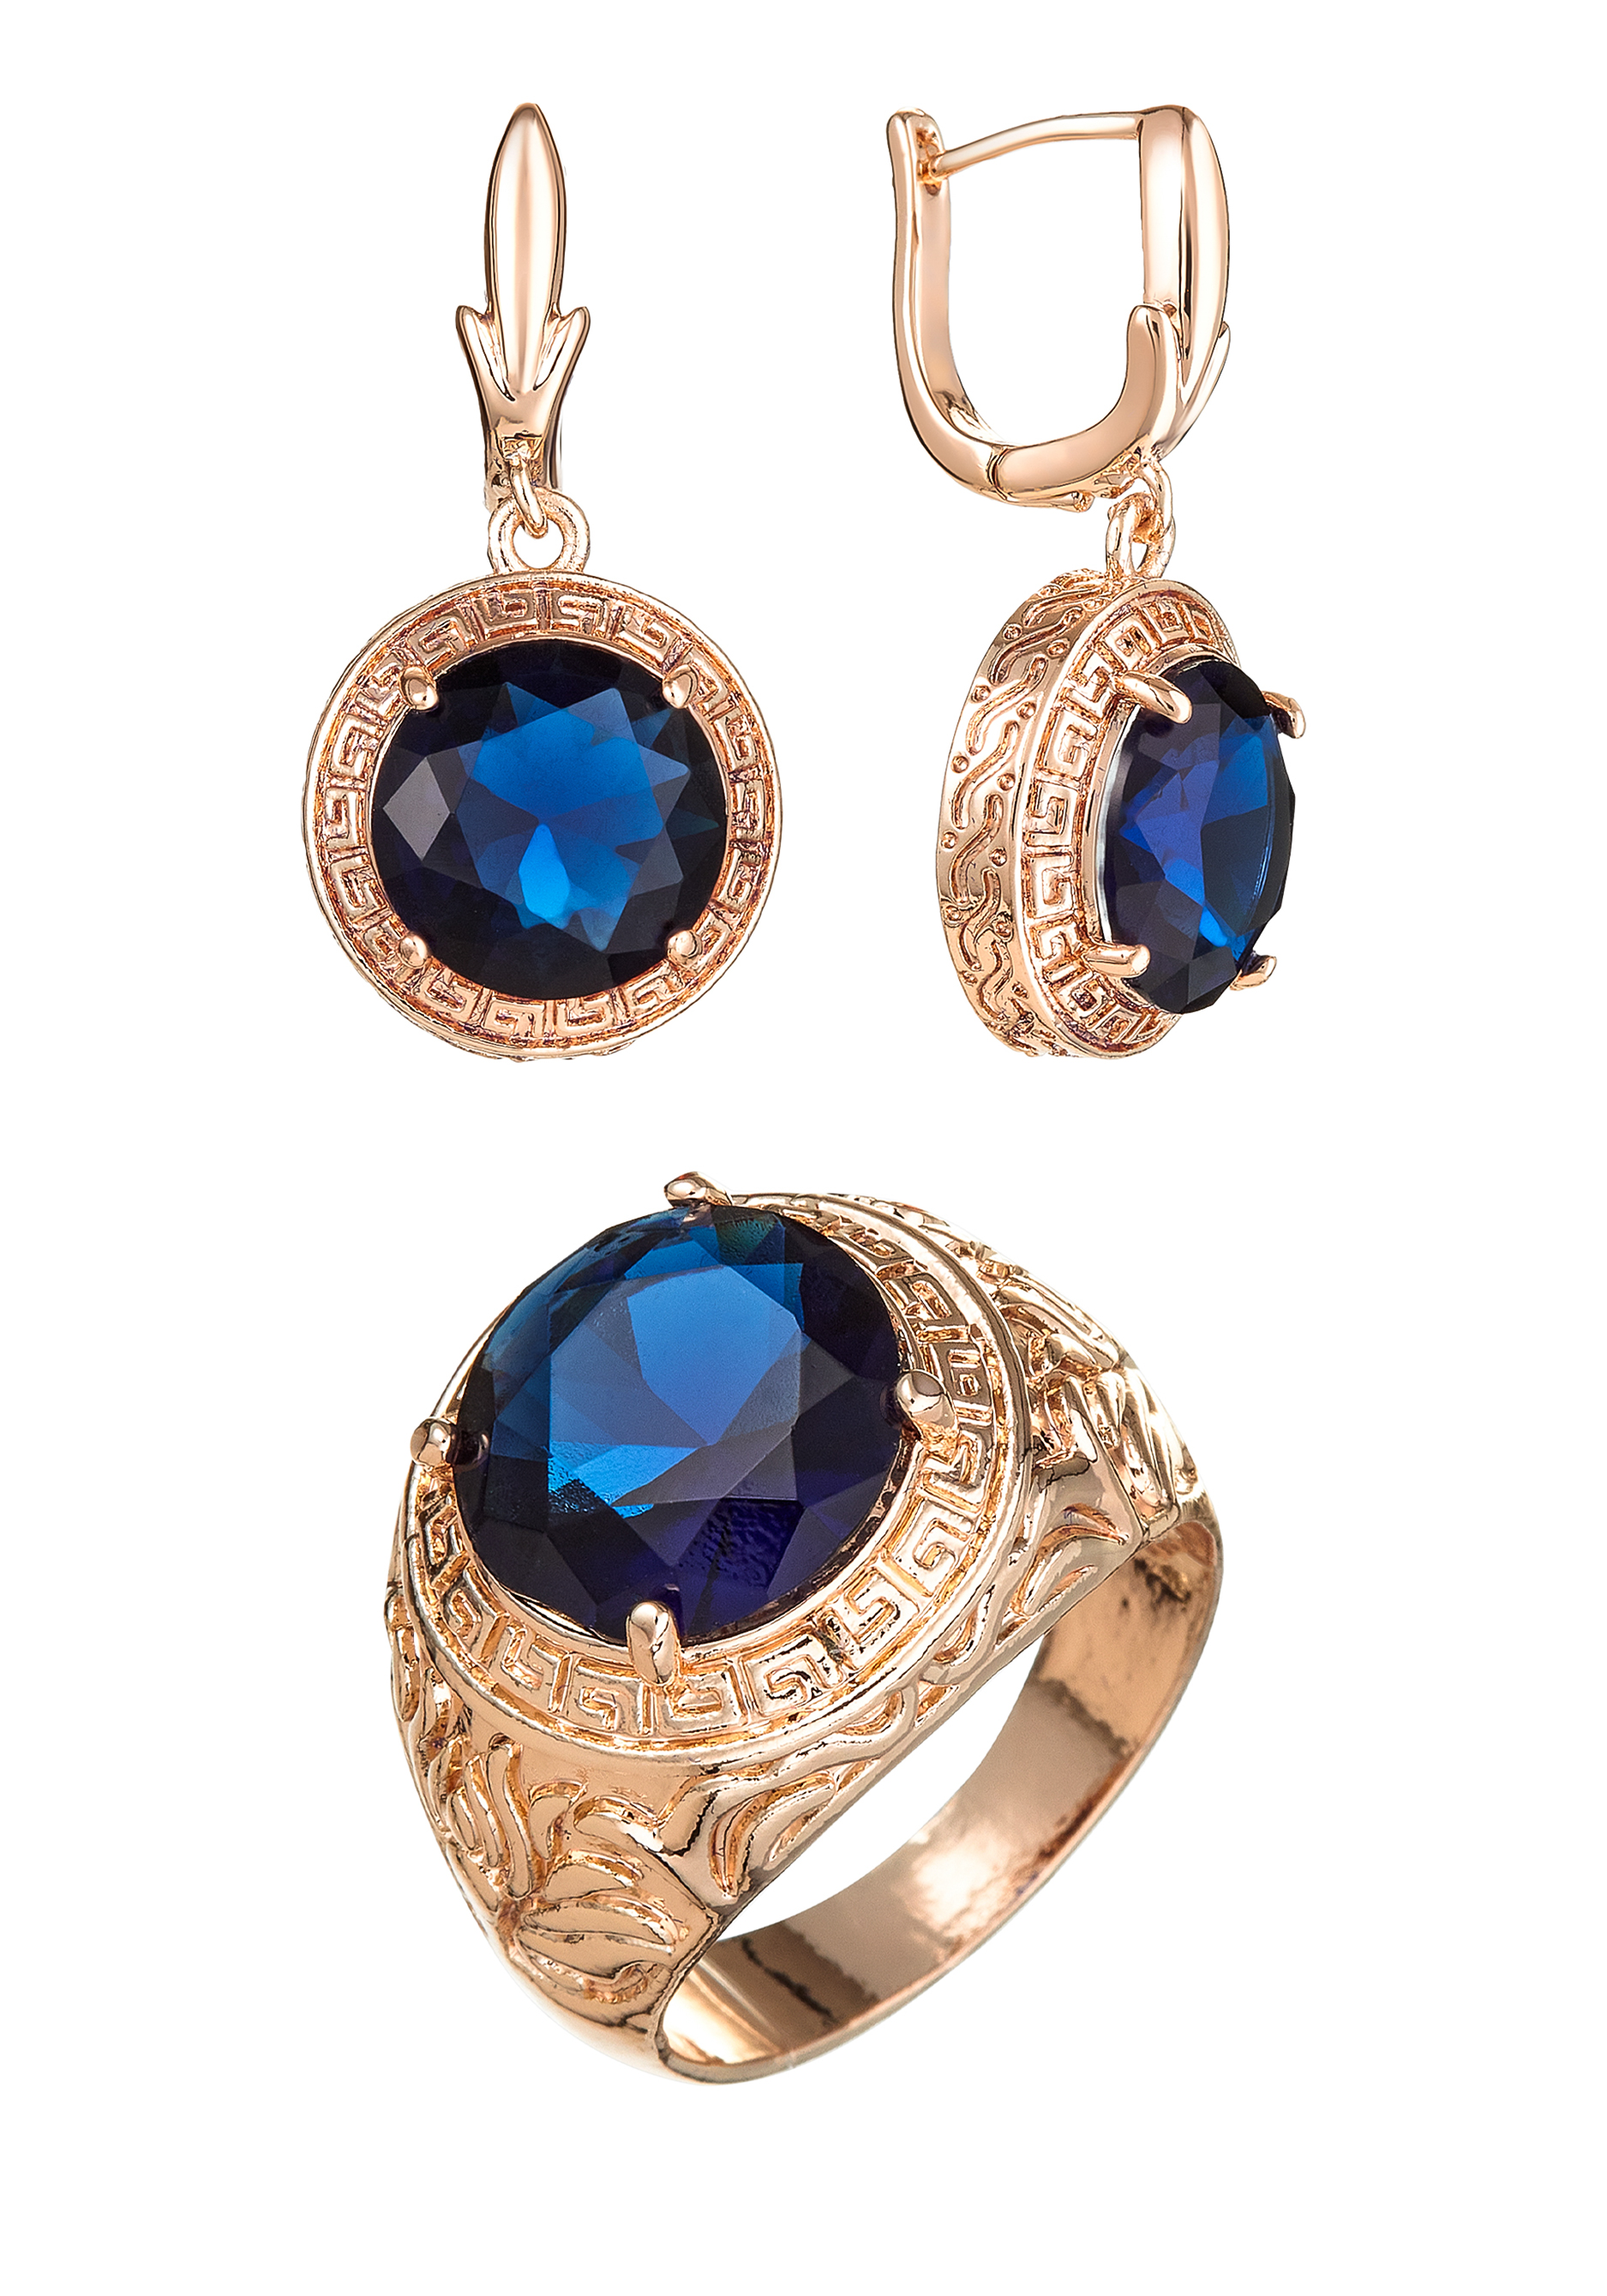 Комплект "Очаровательный вечер" Apsara, цвет синий, размер 19 перстень - фото 1